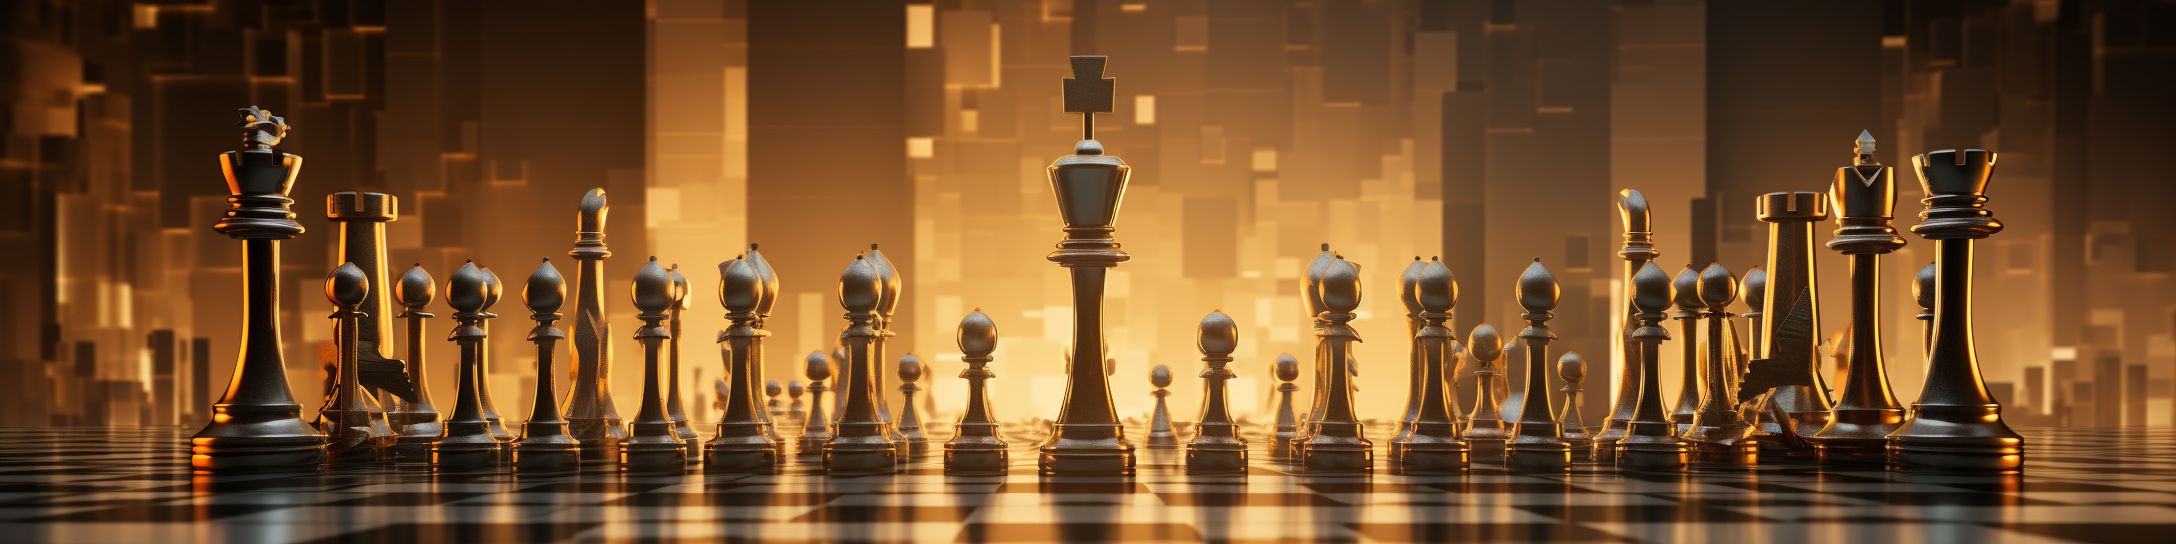  Stratégies courantes dans les compétitions d'échecs